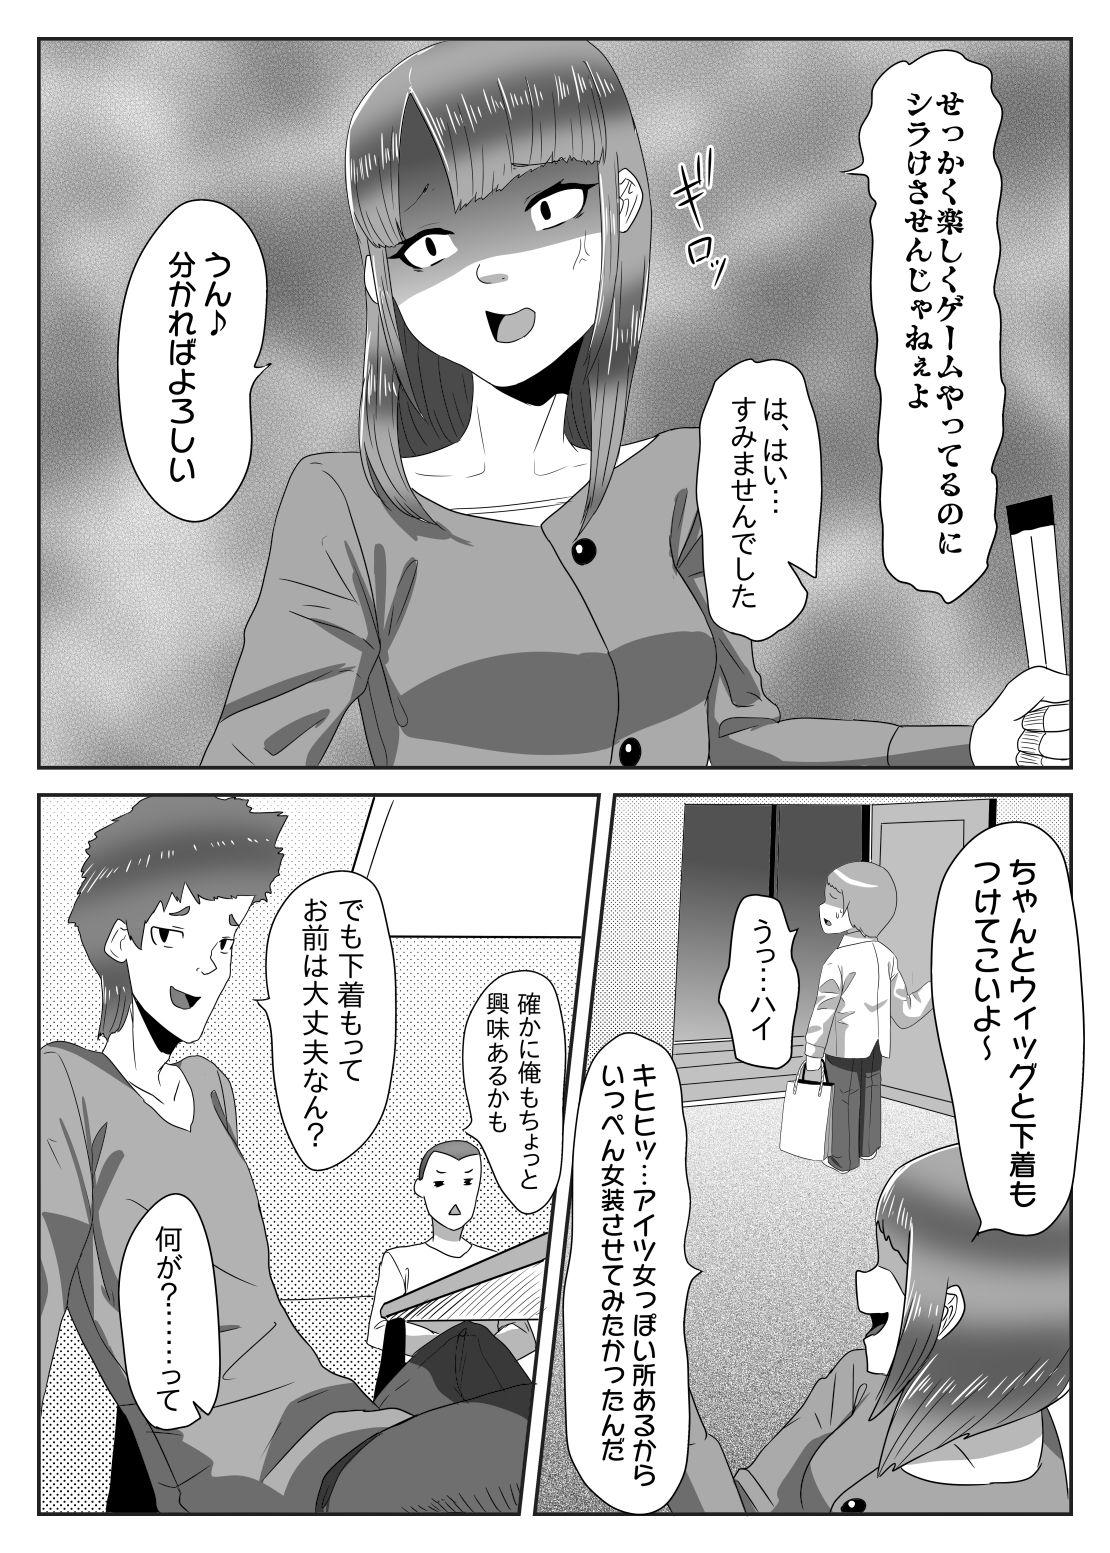 Cut Batsu gēmu de josō sanpo sa se rarete itara ikemen futanari musume ni tasuke raremashita - Original Long Hair - Page 5